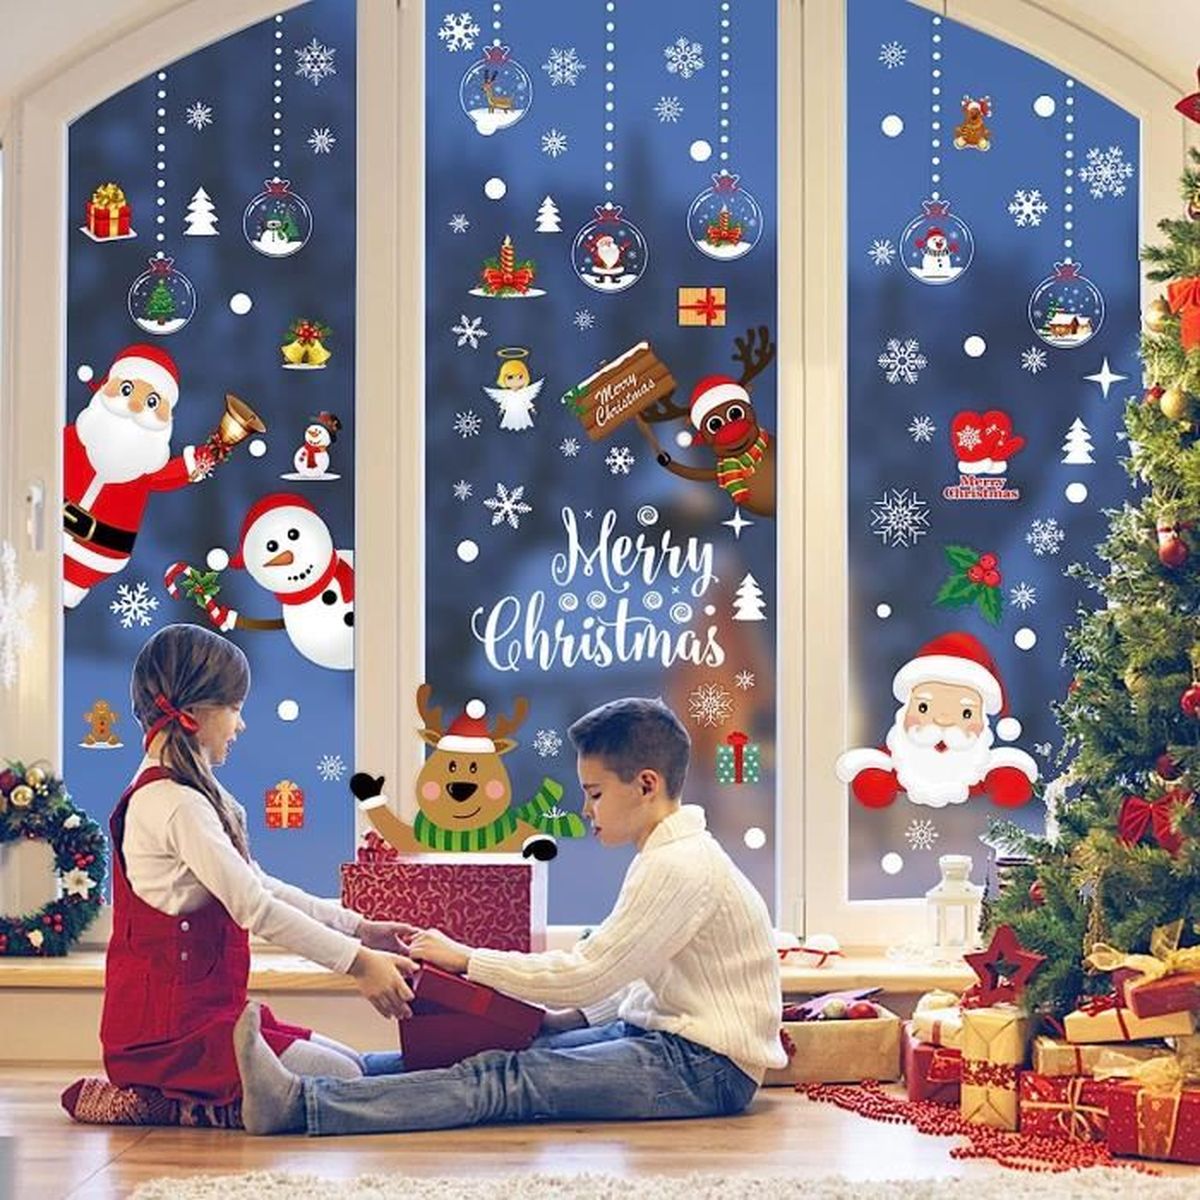 Etiquettes cadeaux autocollantes - Noël classique rouge et or + petits  stickers décoratifs - 6 pièces